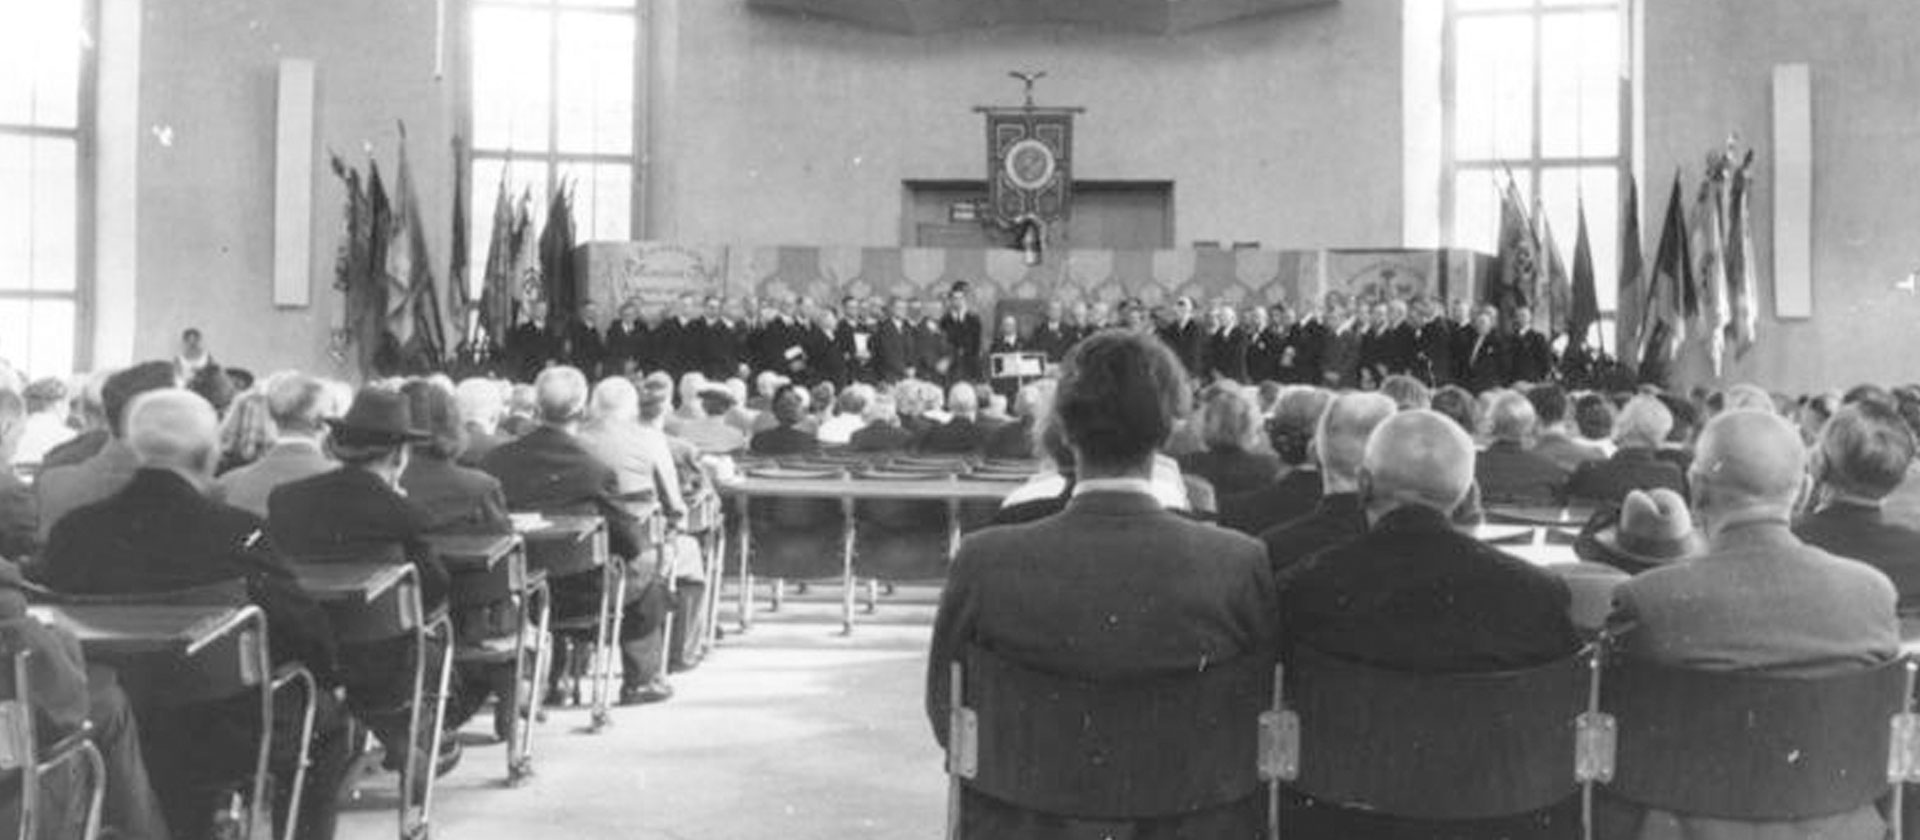 Eröffnung des Frankfurter Turnfestes in der Paulskirche 1948 | Quelle: Wikipedia/Bundesarchiv